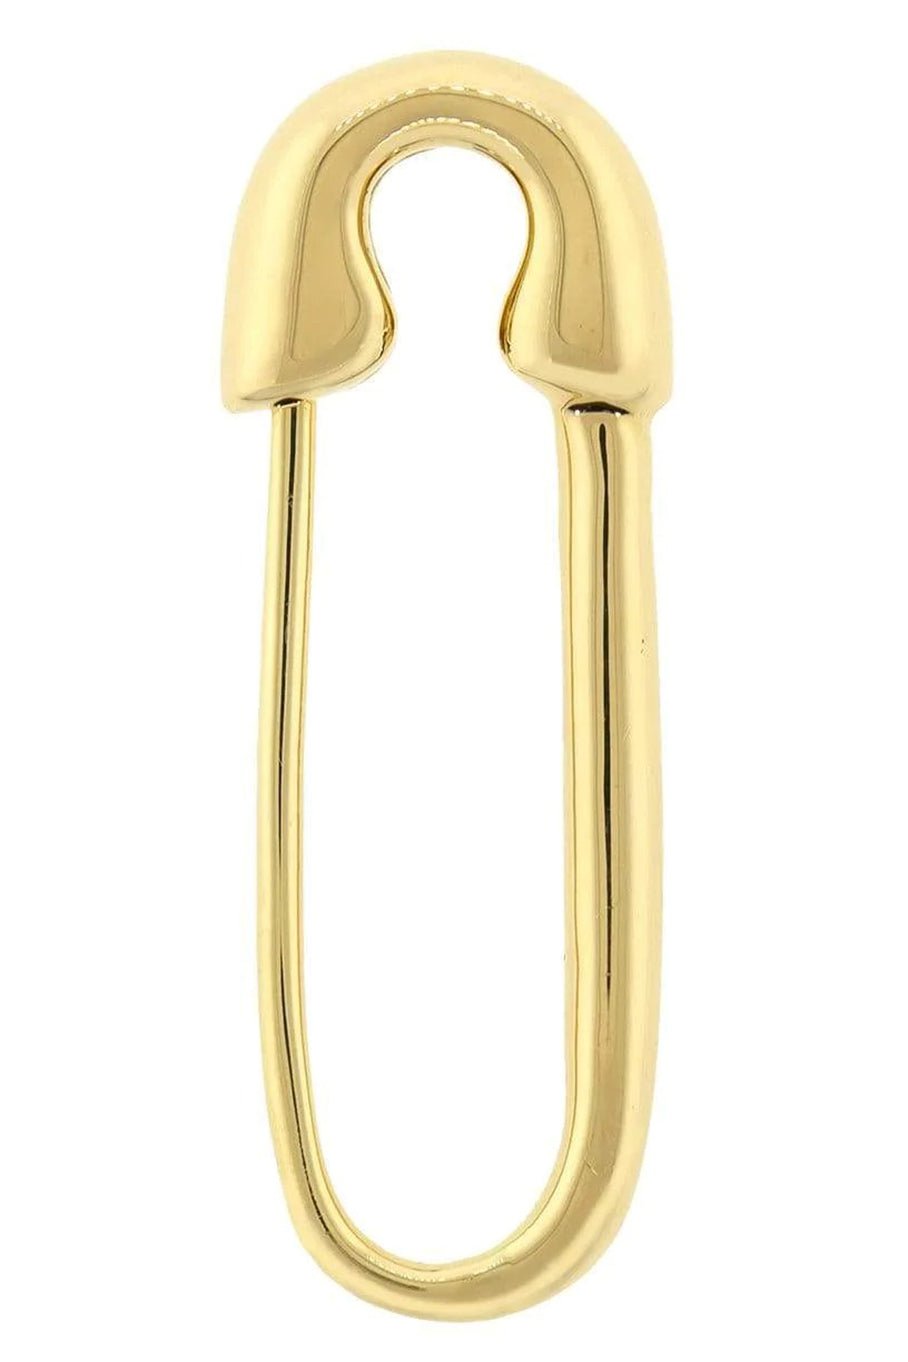 Safety Pin Earring - Yellow Gold JEWELRYFINE JEWELEARRING ANITA KO   